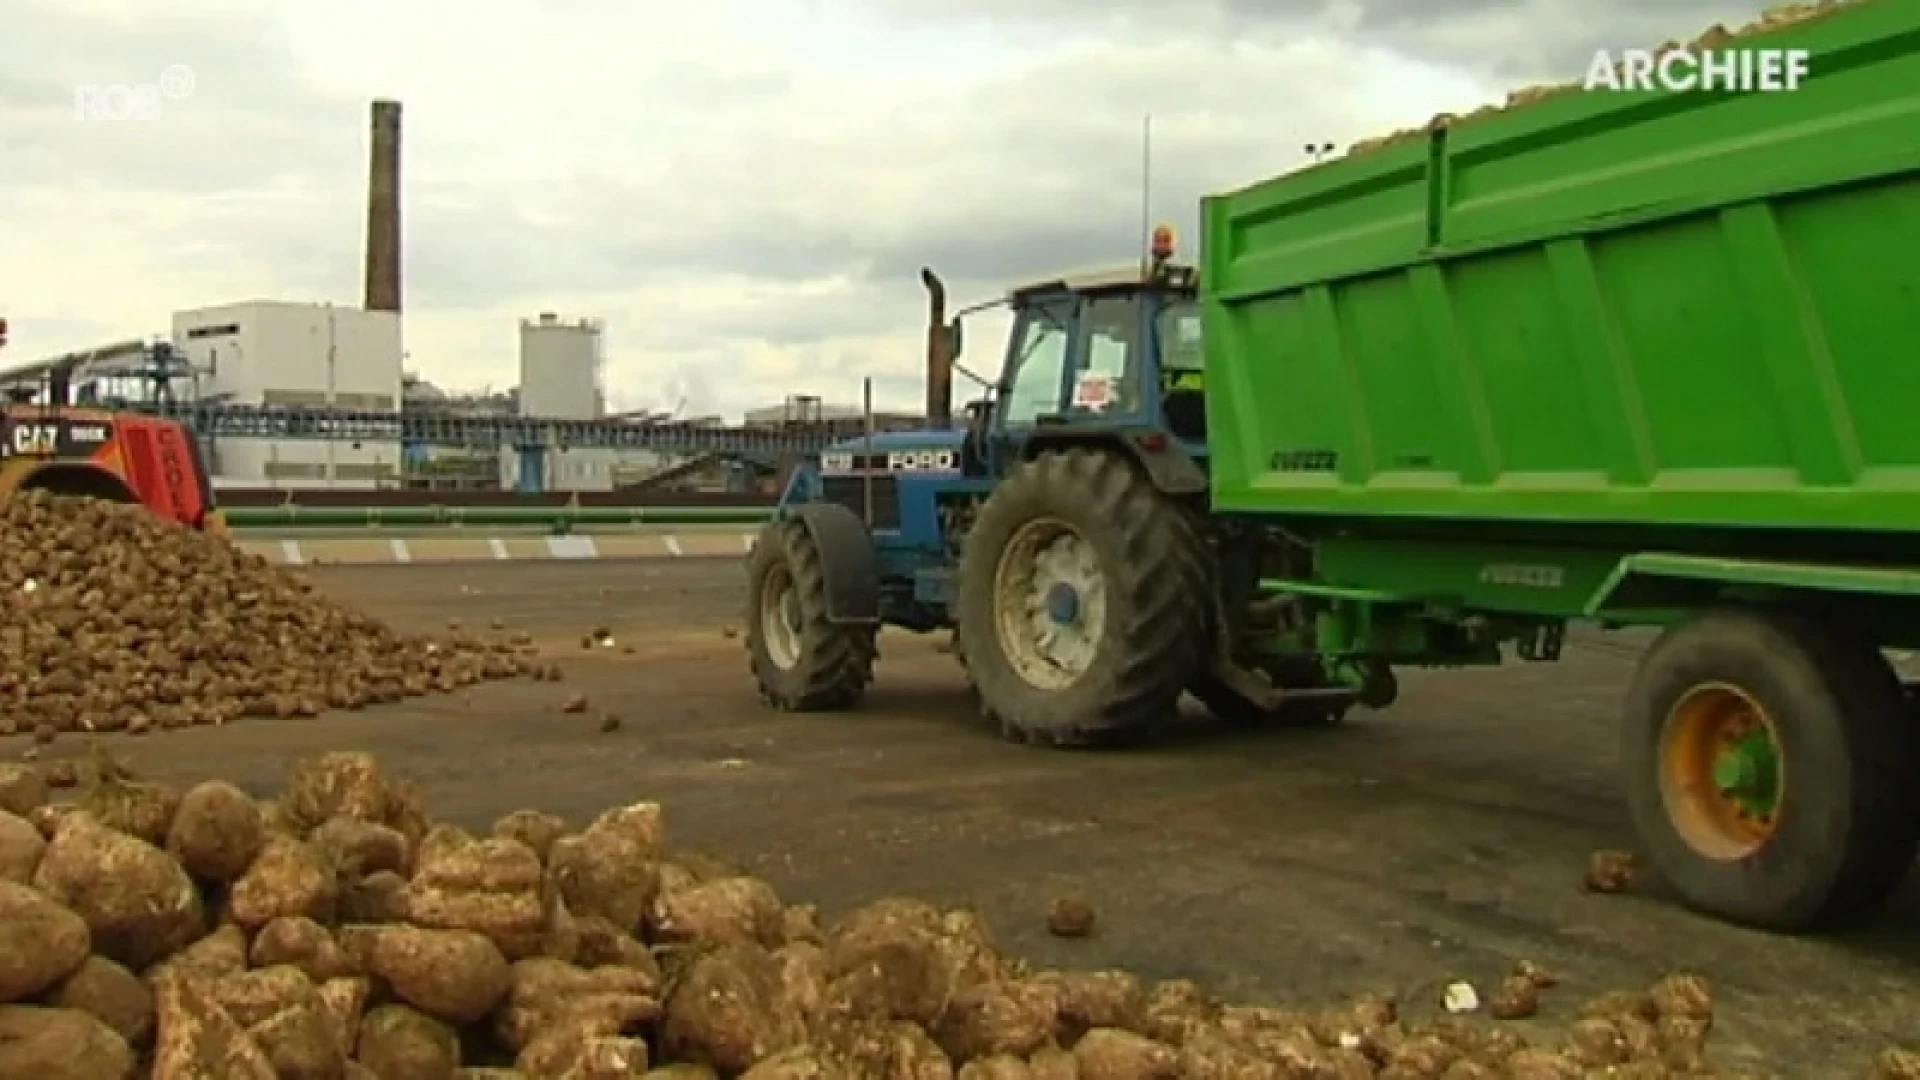 Suikerfabriek in Tienen maakt zich op voor start van jaarlijkse bietencampagne